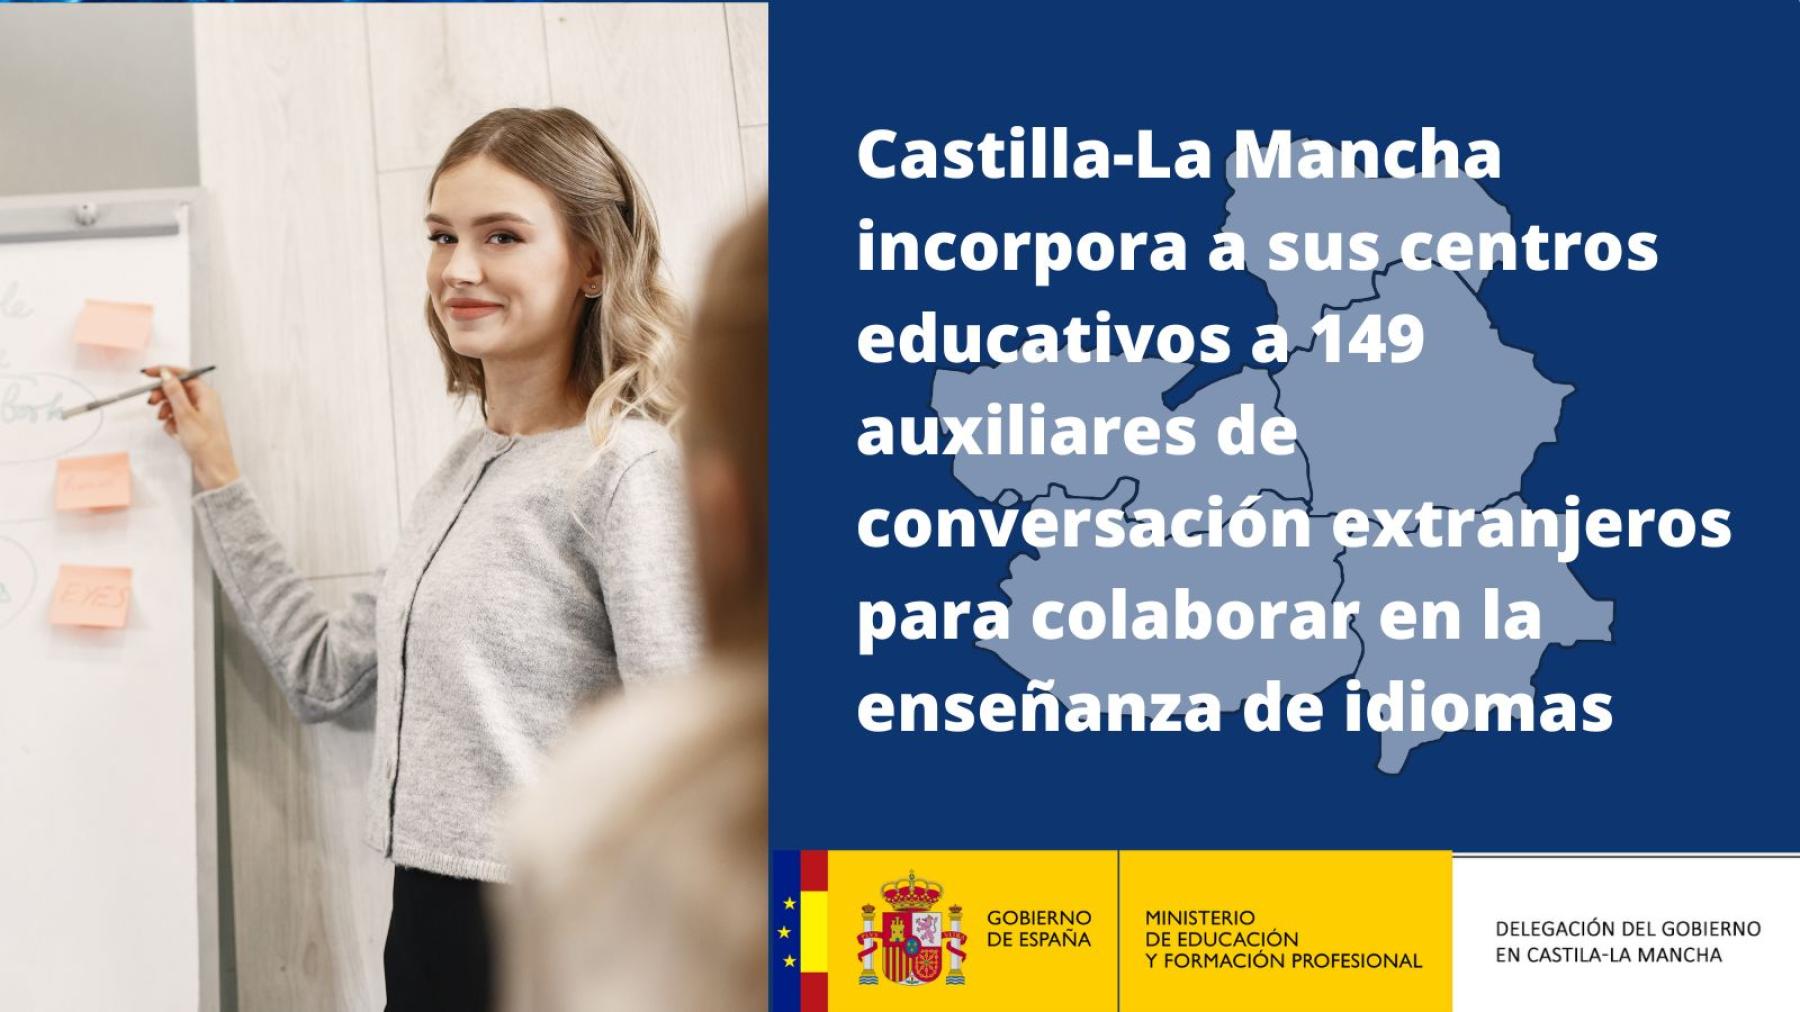 Castilla-La Mancha incorpora a sus centros educativos a 149 auxiliares de conversación extranjeros para colaborar en la enseñanza de idiomas